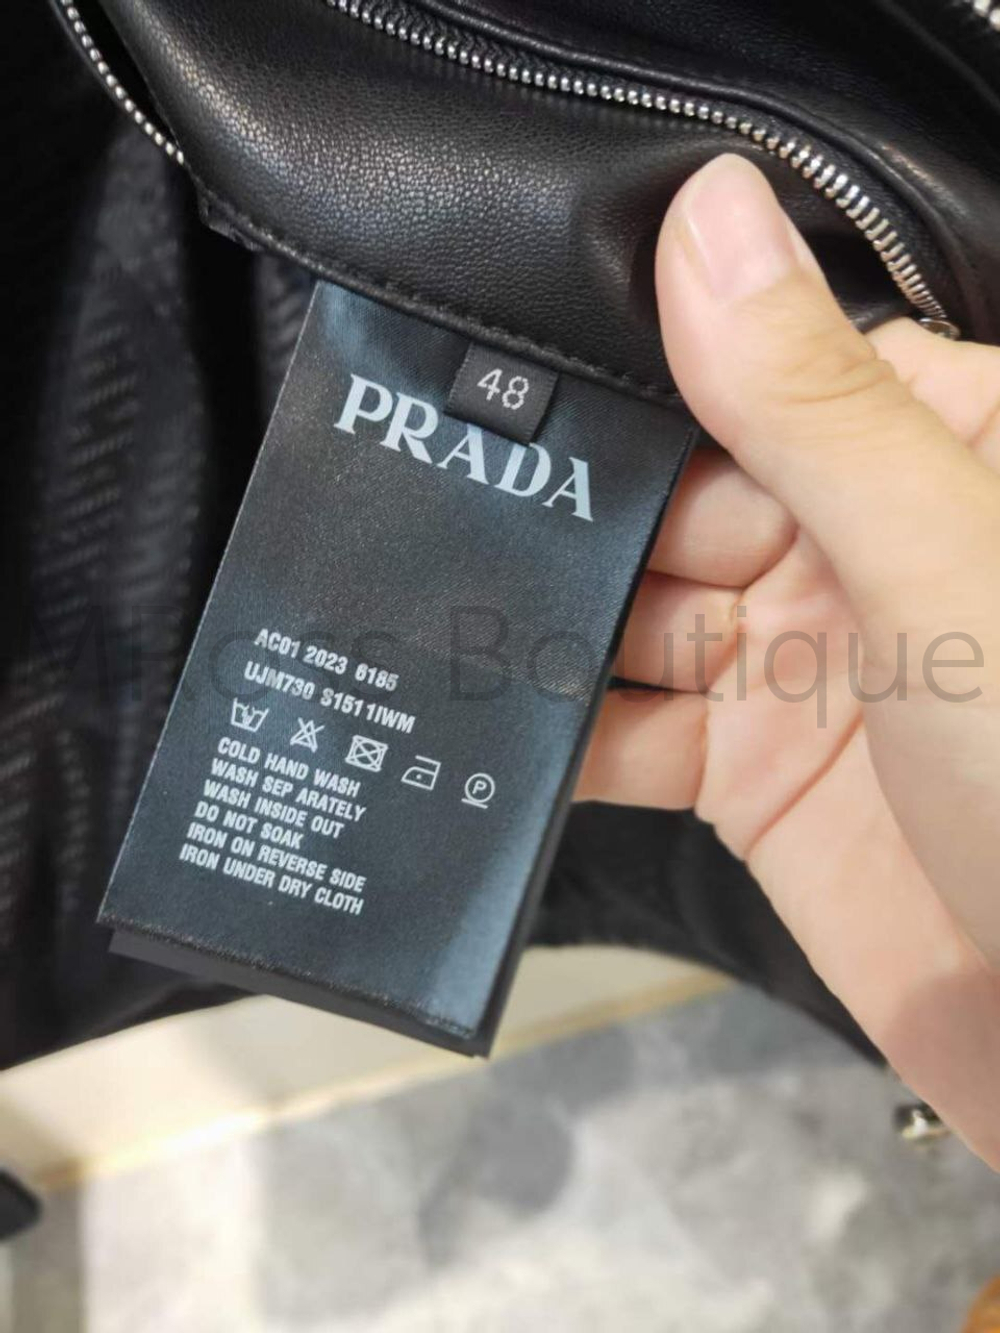 Черный кожаный жилет Prada премиум класса